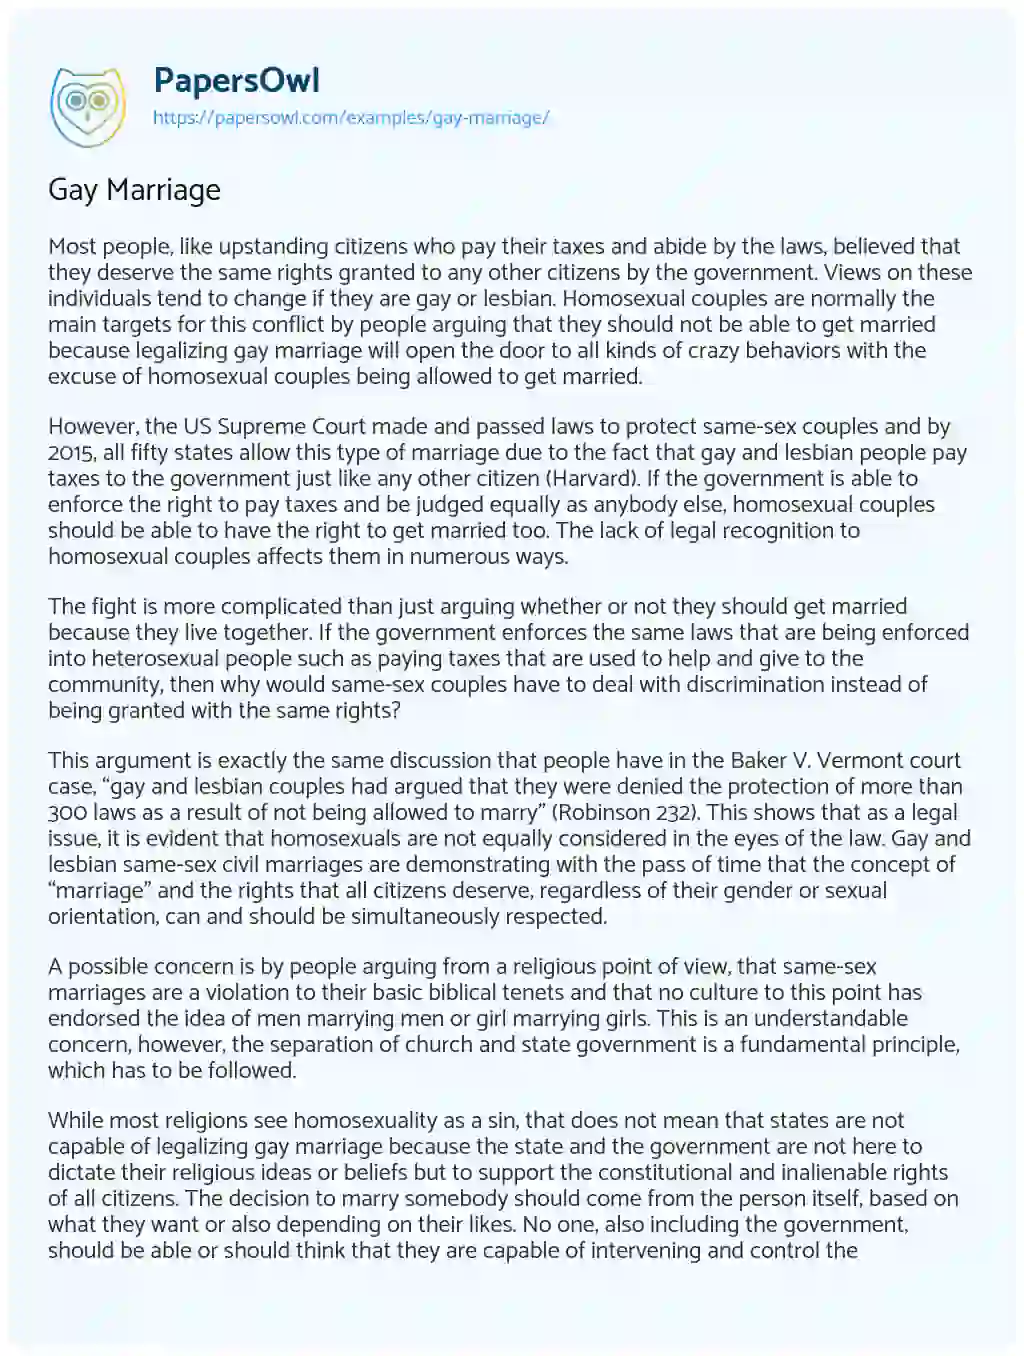 Gay Marriage essay